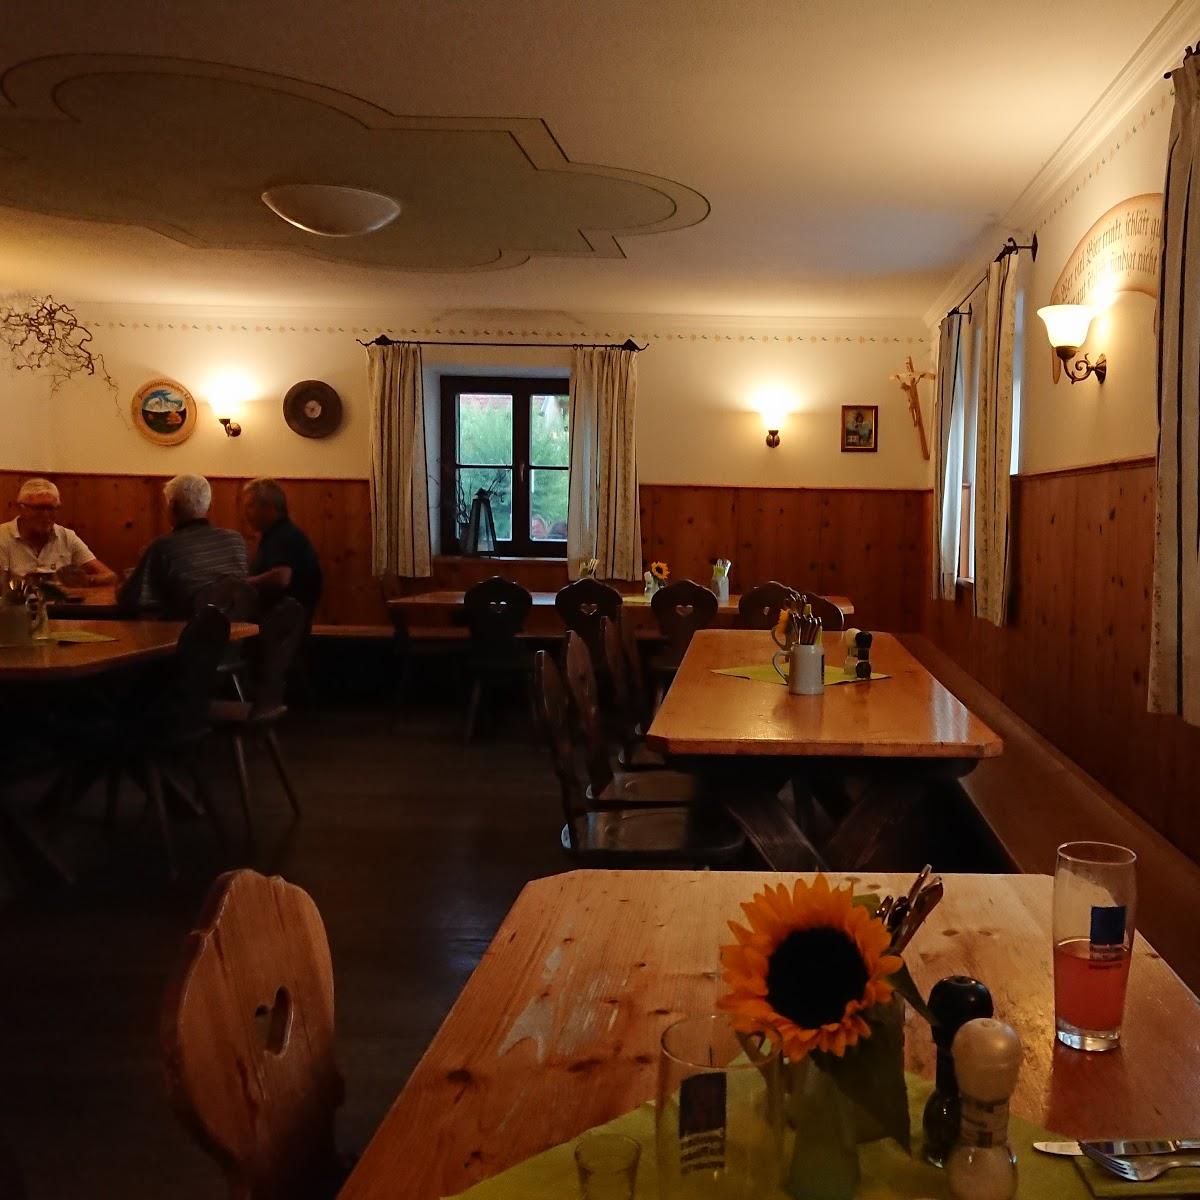 Restaurant "Beim Dorfwirt" in  Wielenbach